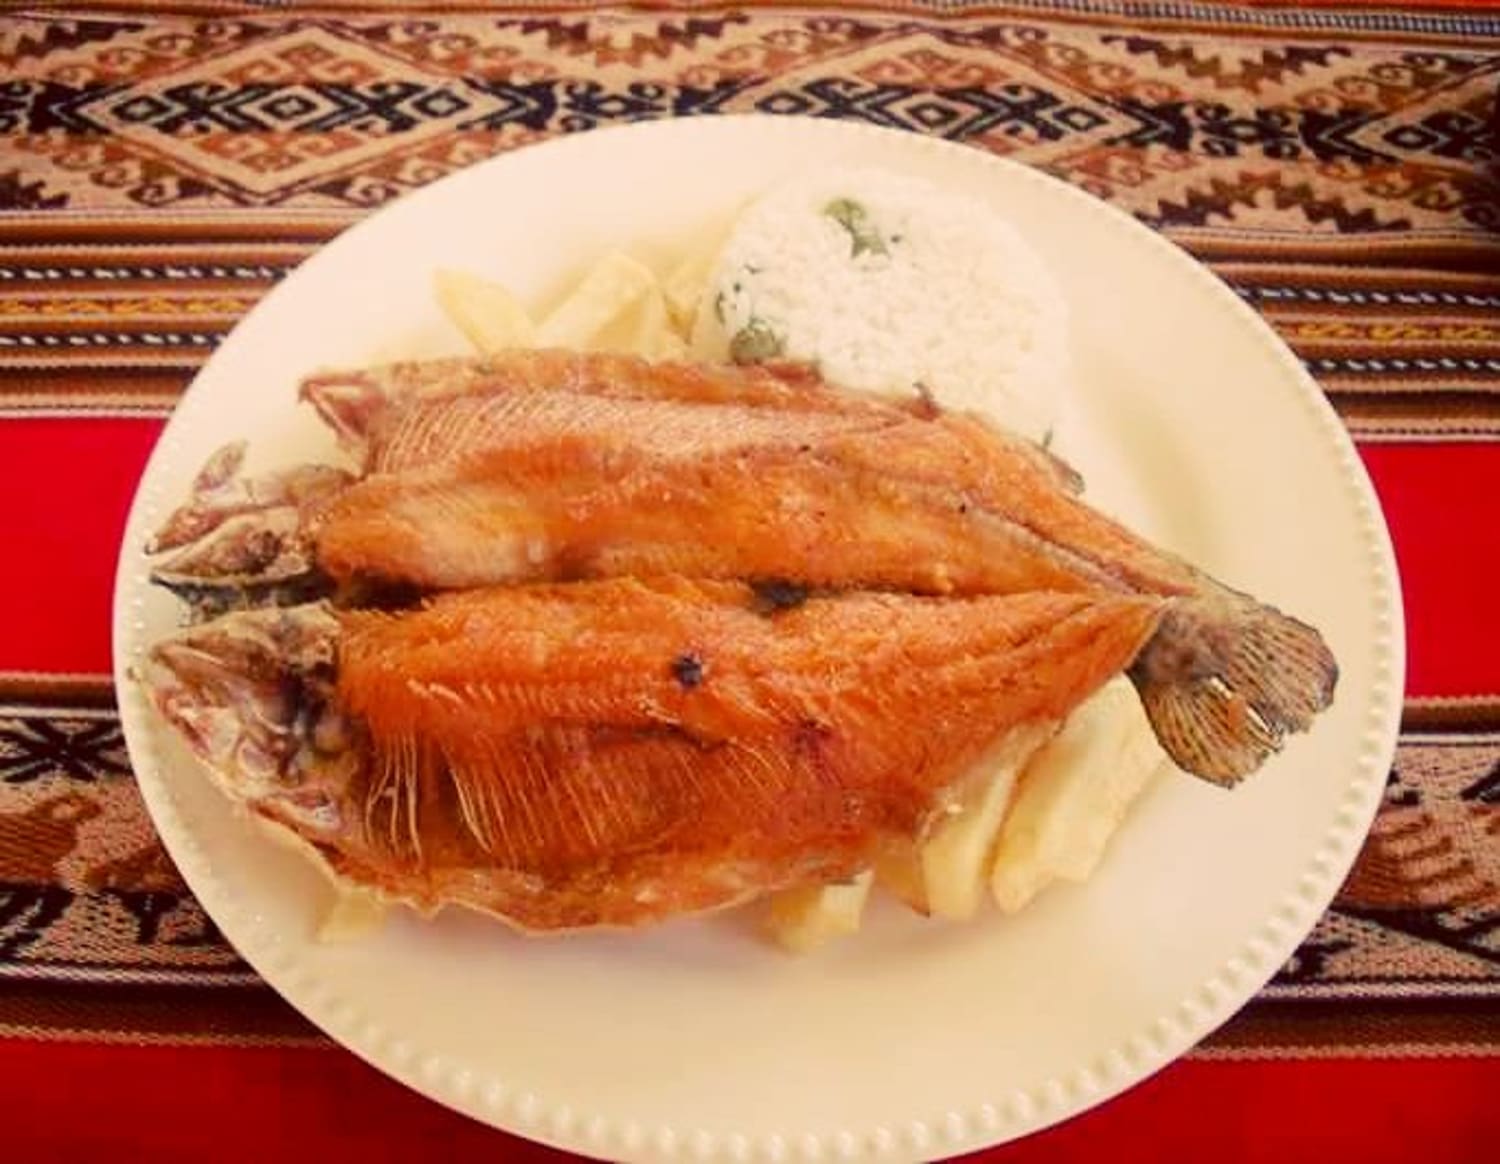 comida boliviana tipica truta do lago titicaca